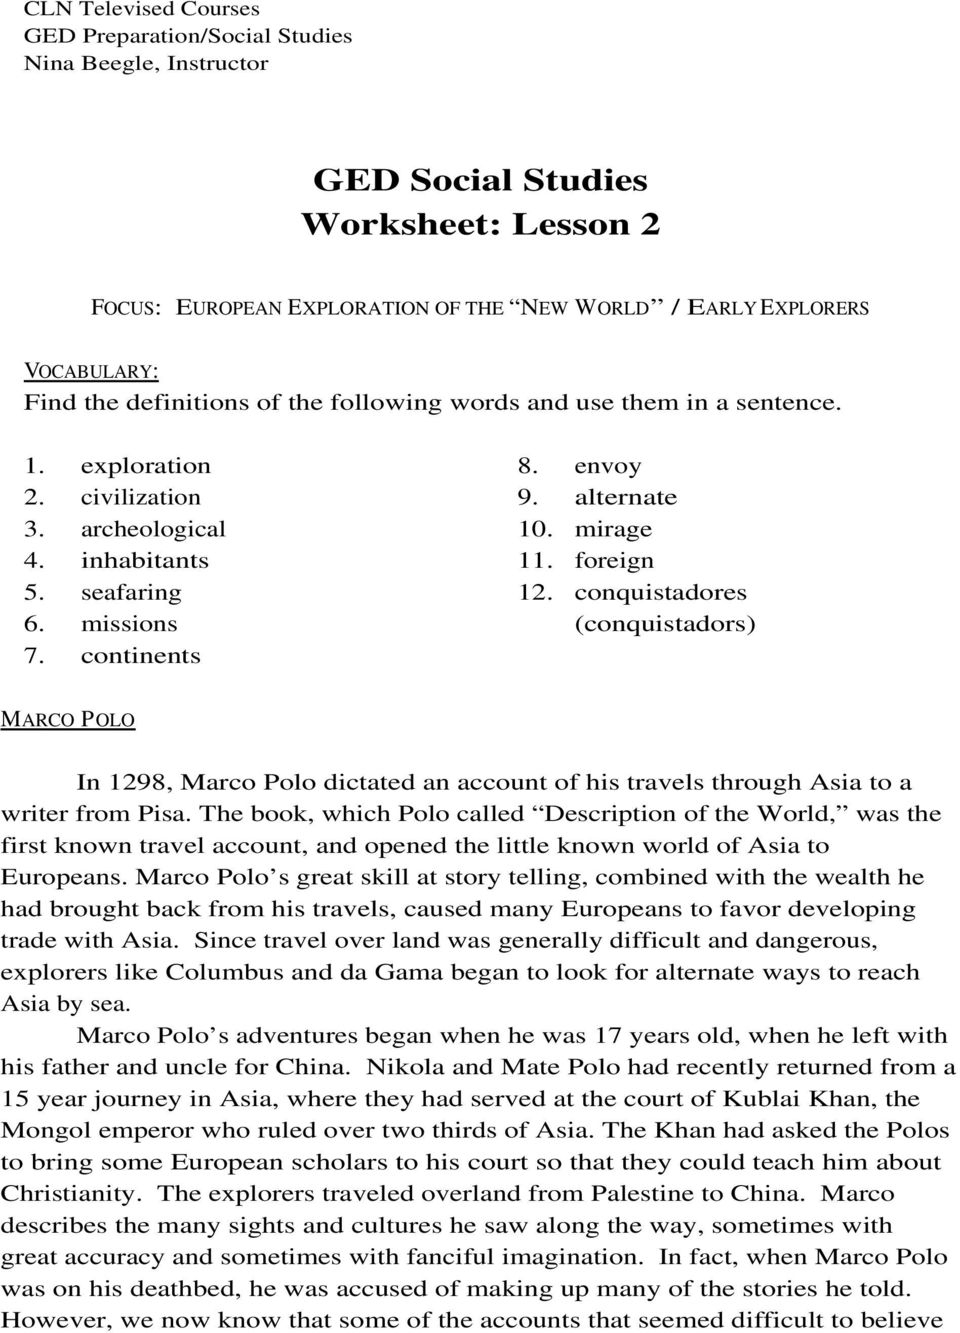 Ged Social Studies Worksheet: Lesson 2 - Pdf | Ged Social Studies Printable Worksheets